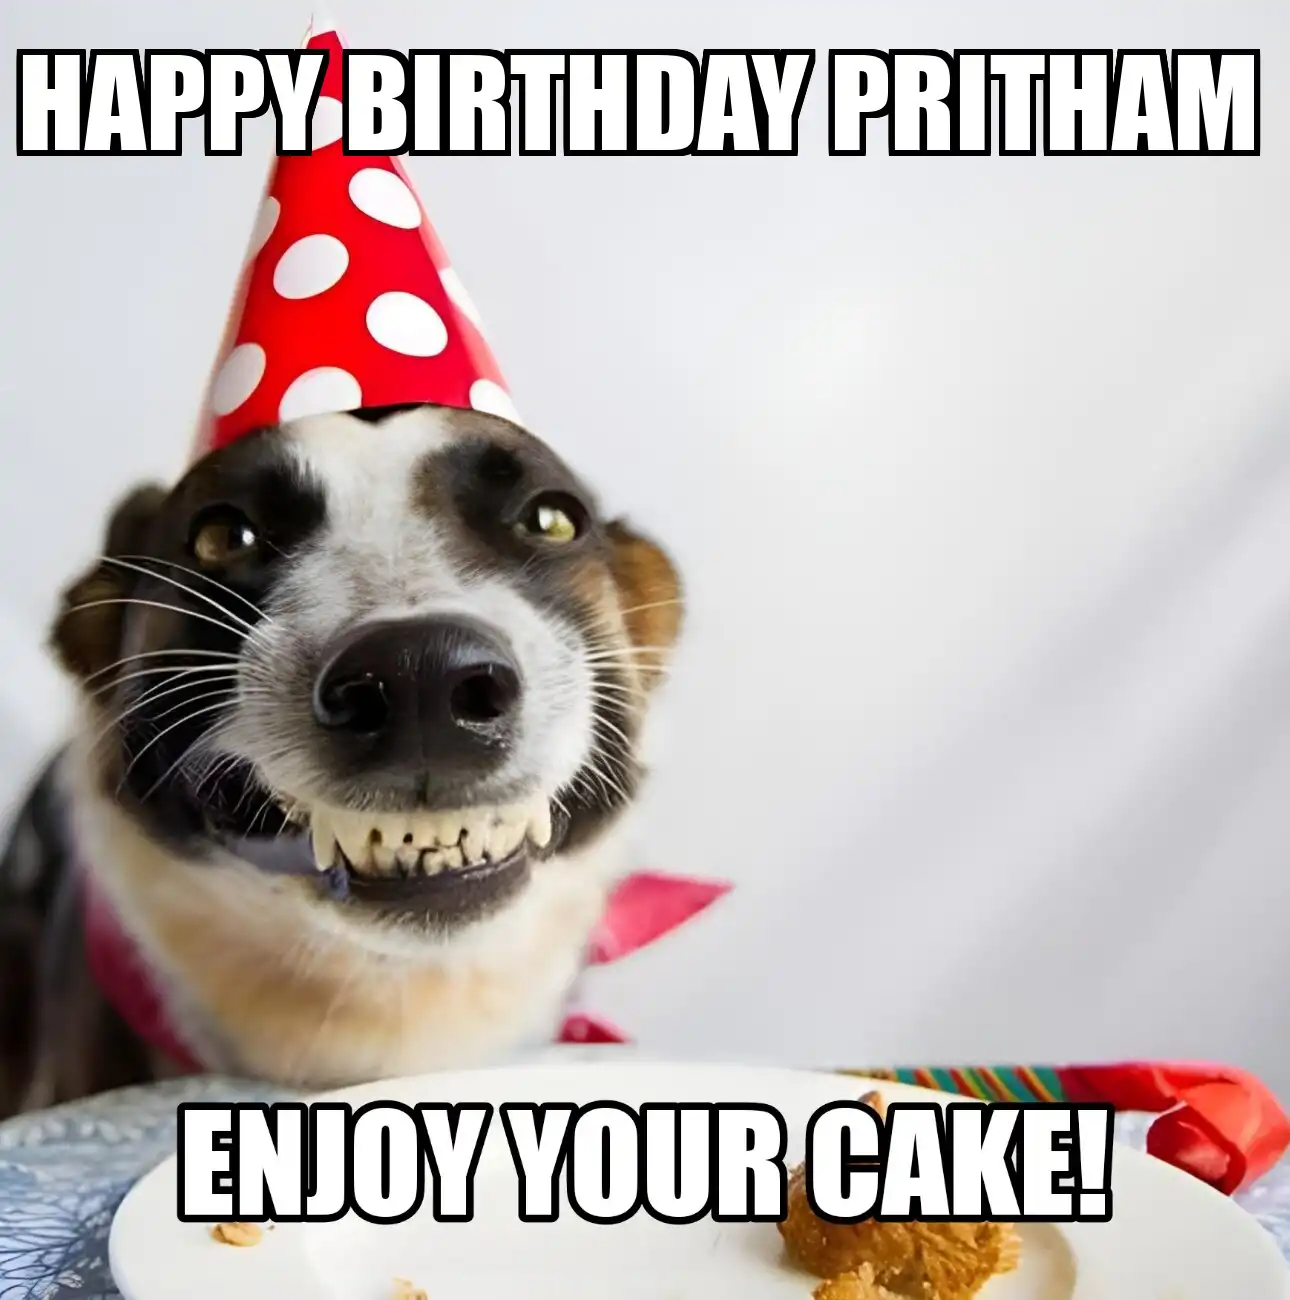 Happy Birthday Pritham Enjoy Your Cake Dog Meme